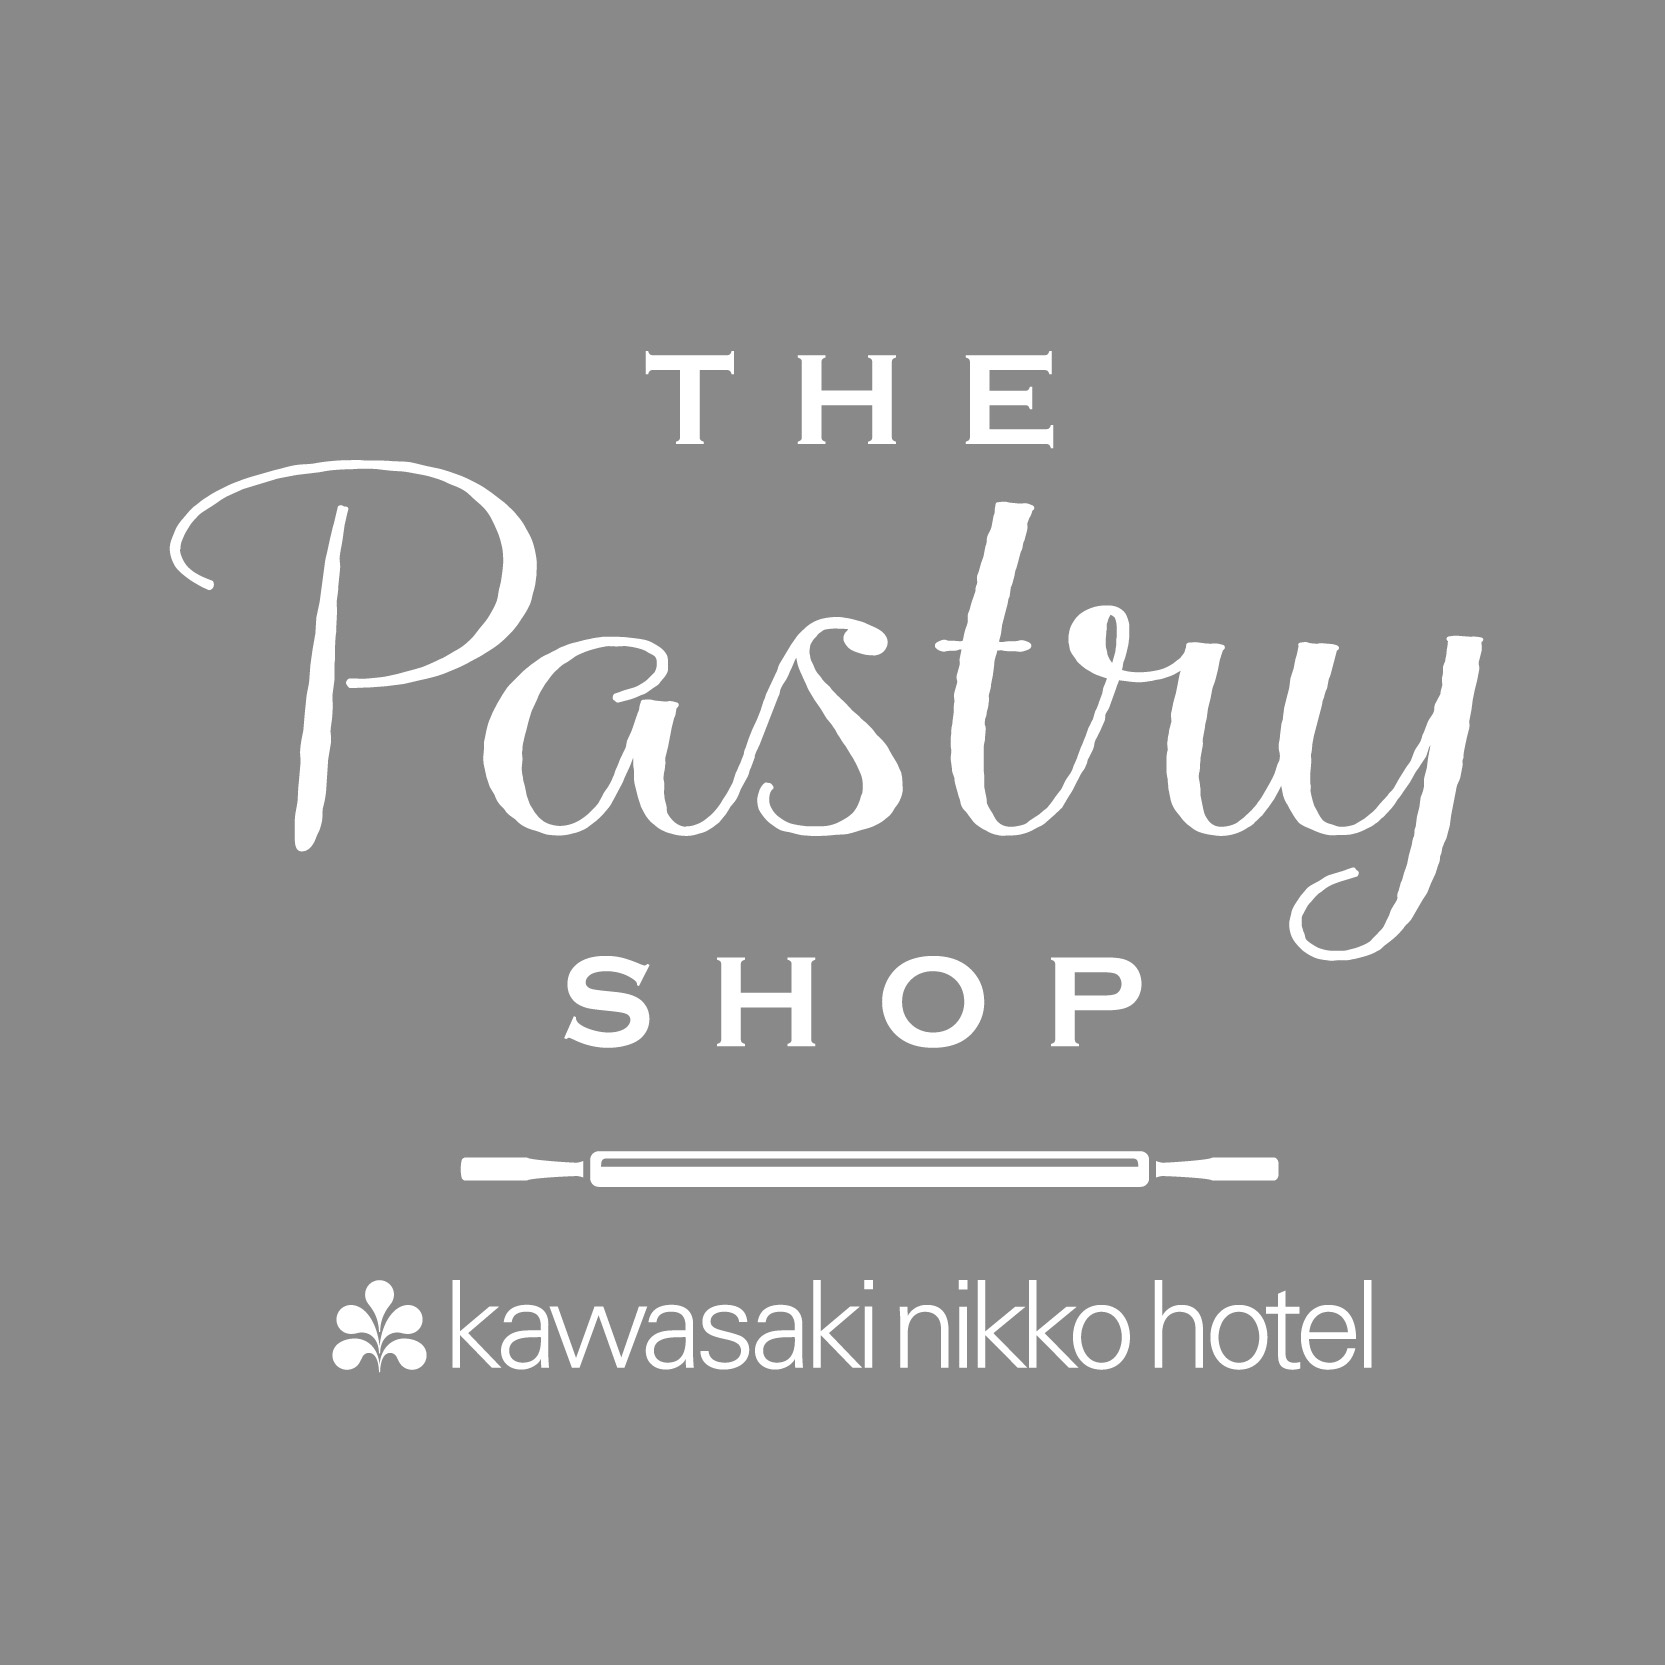 【川崎日航ホテル】ホテル1階に地元川崎、神奈川の素材を活かした生ケーキや焼き菓子が並ぶ「ペストリーショップ」を新規オープンのサブ画像2